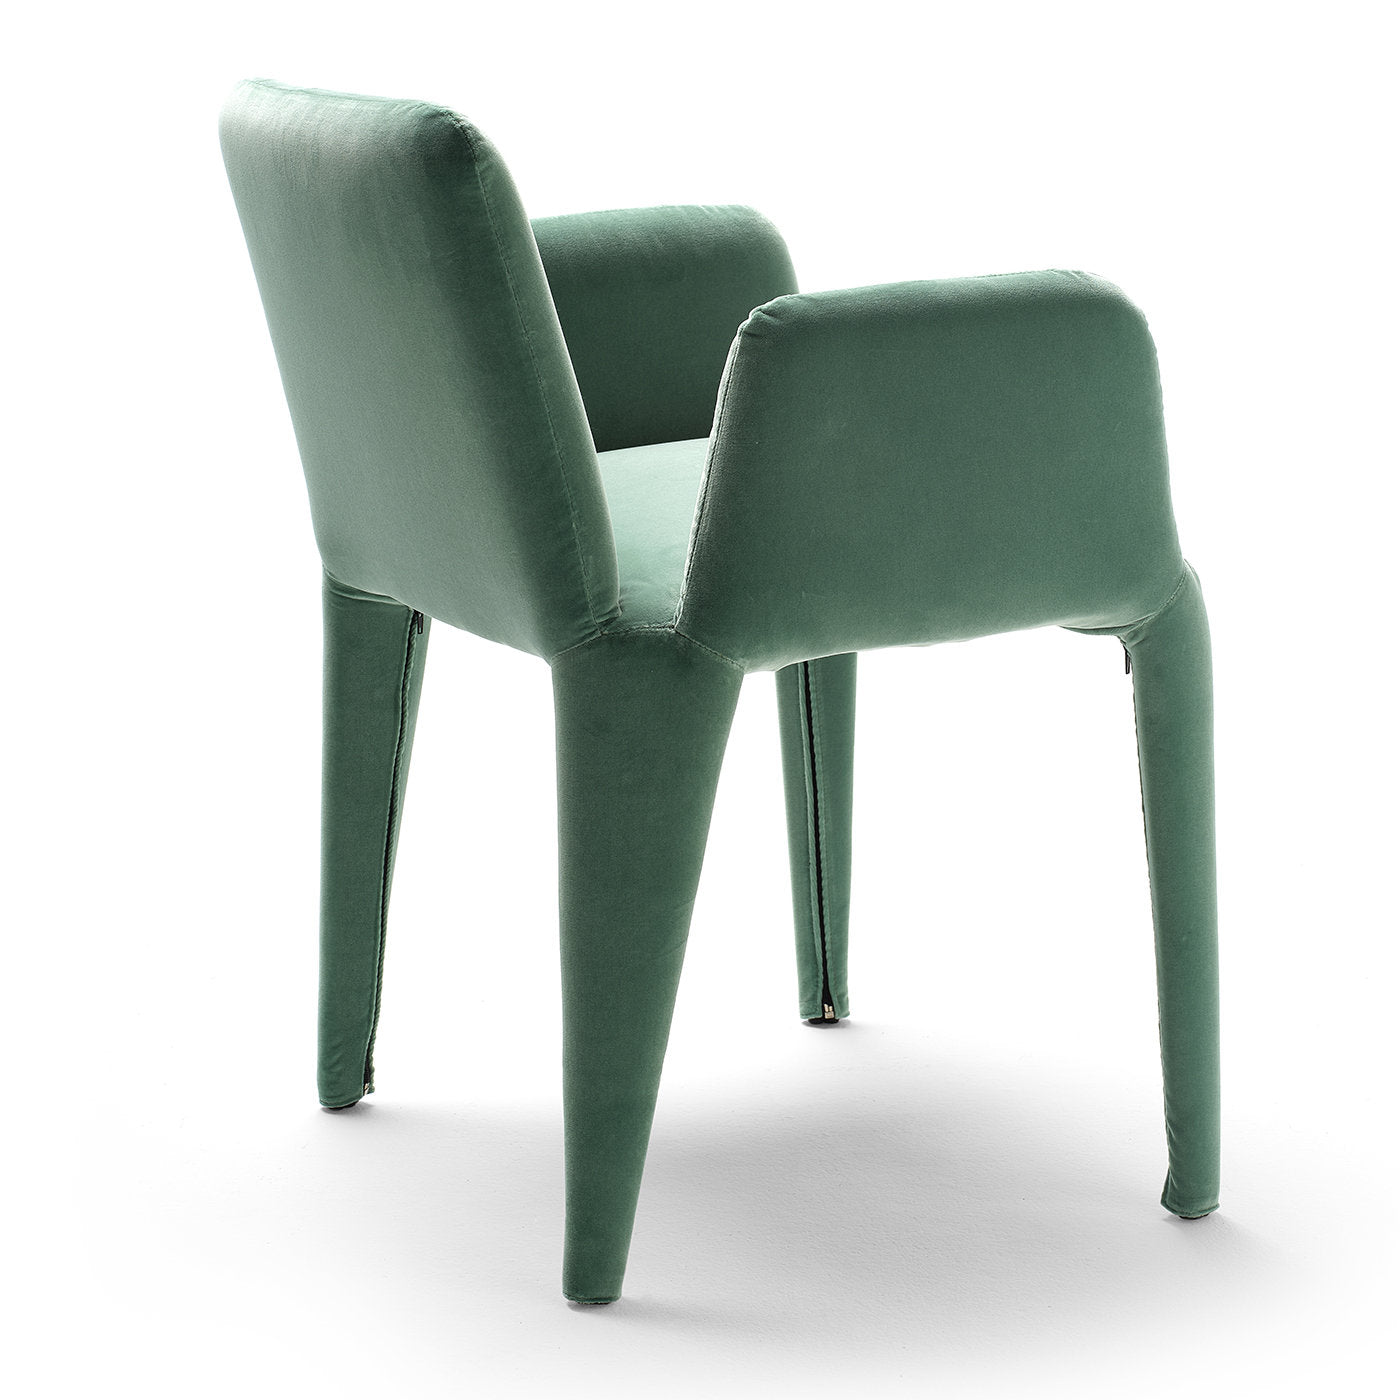 Nova Small Dining chair by Federico Carandini - Alternative view 1